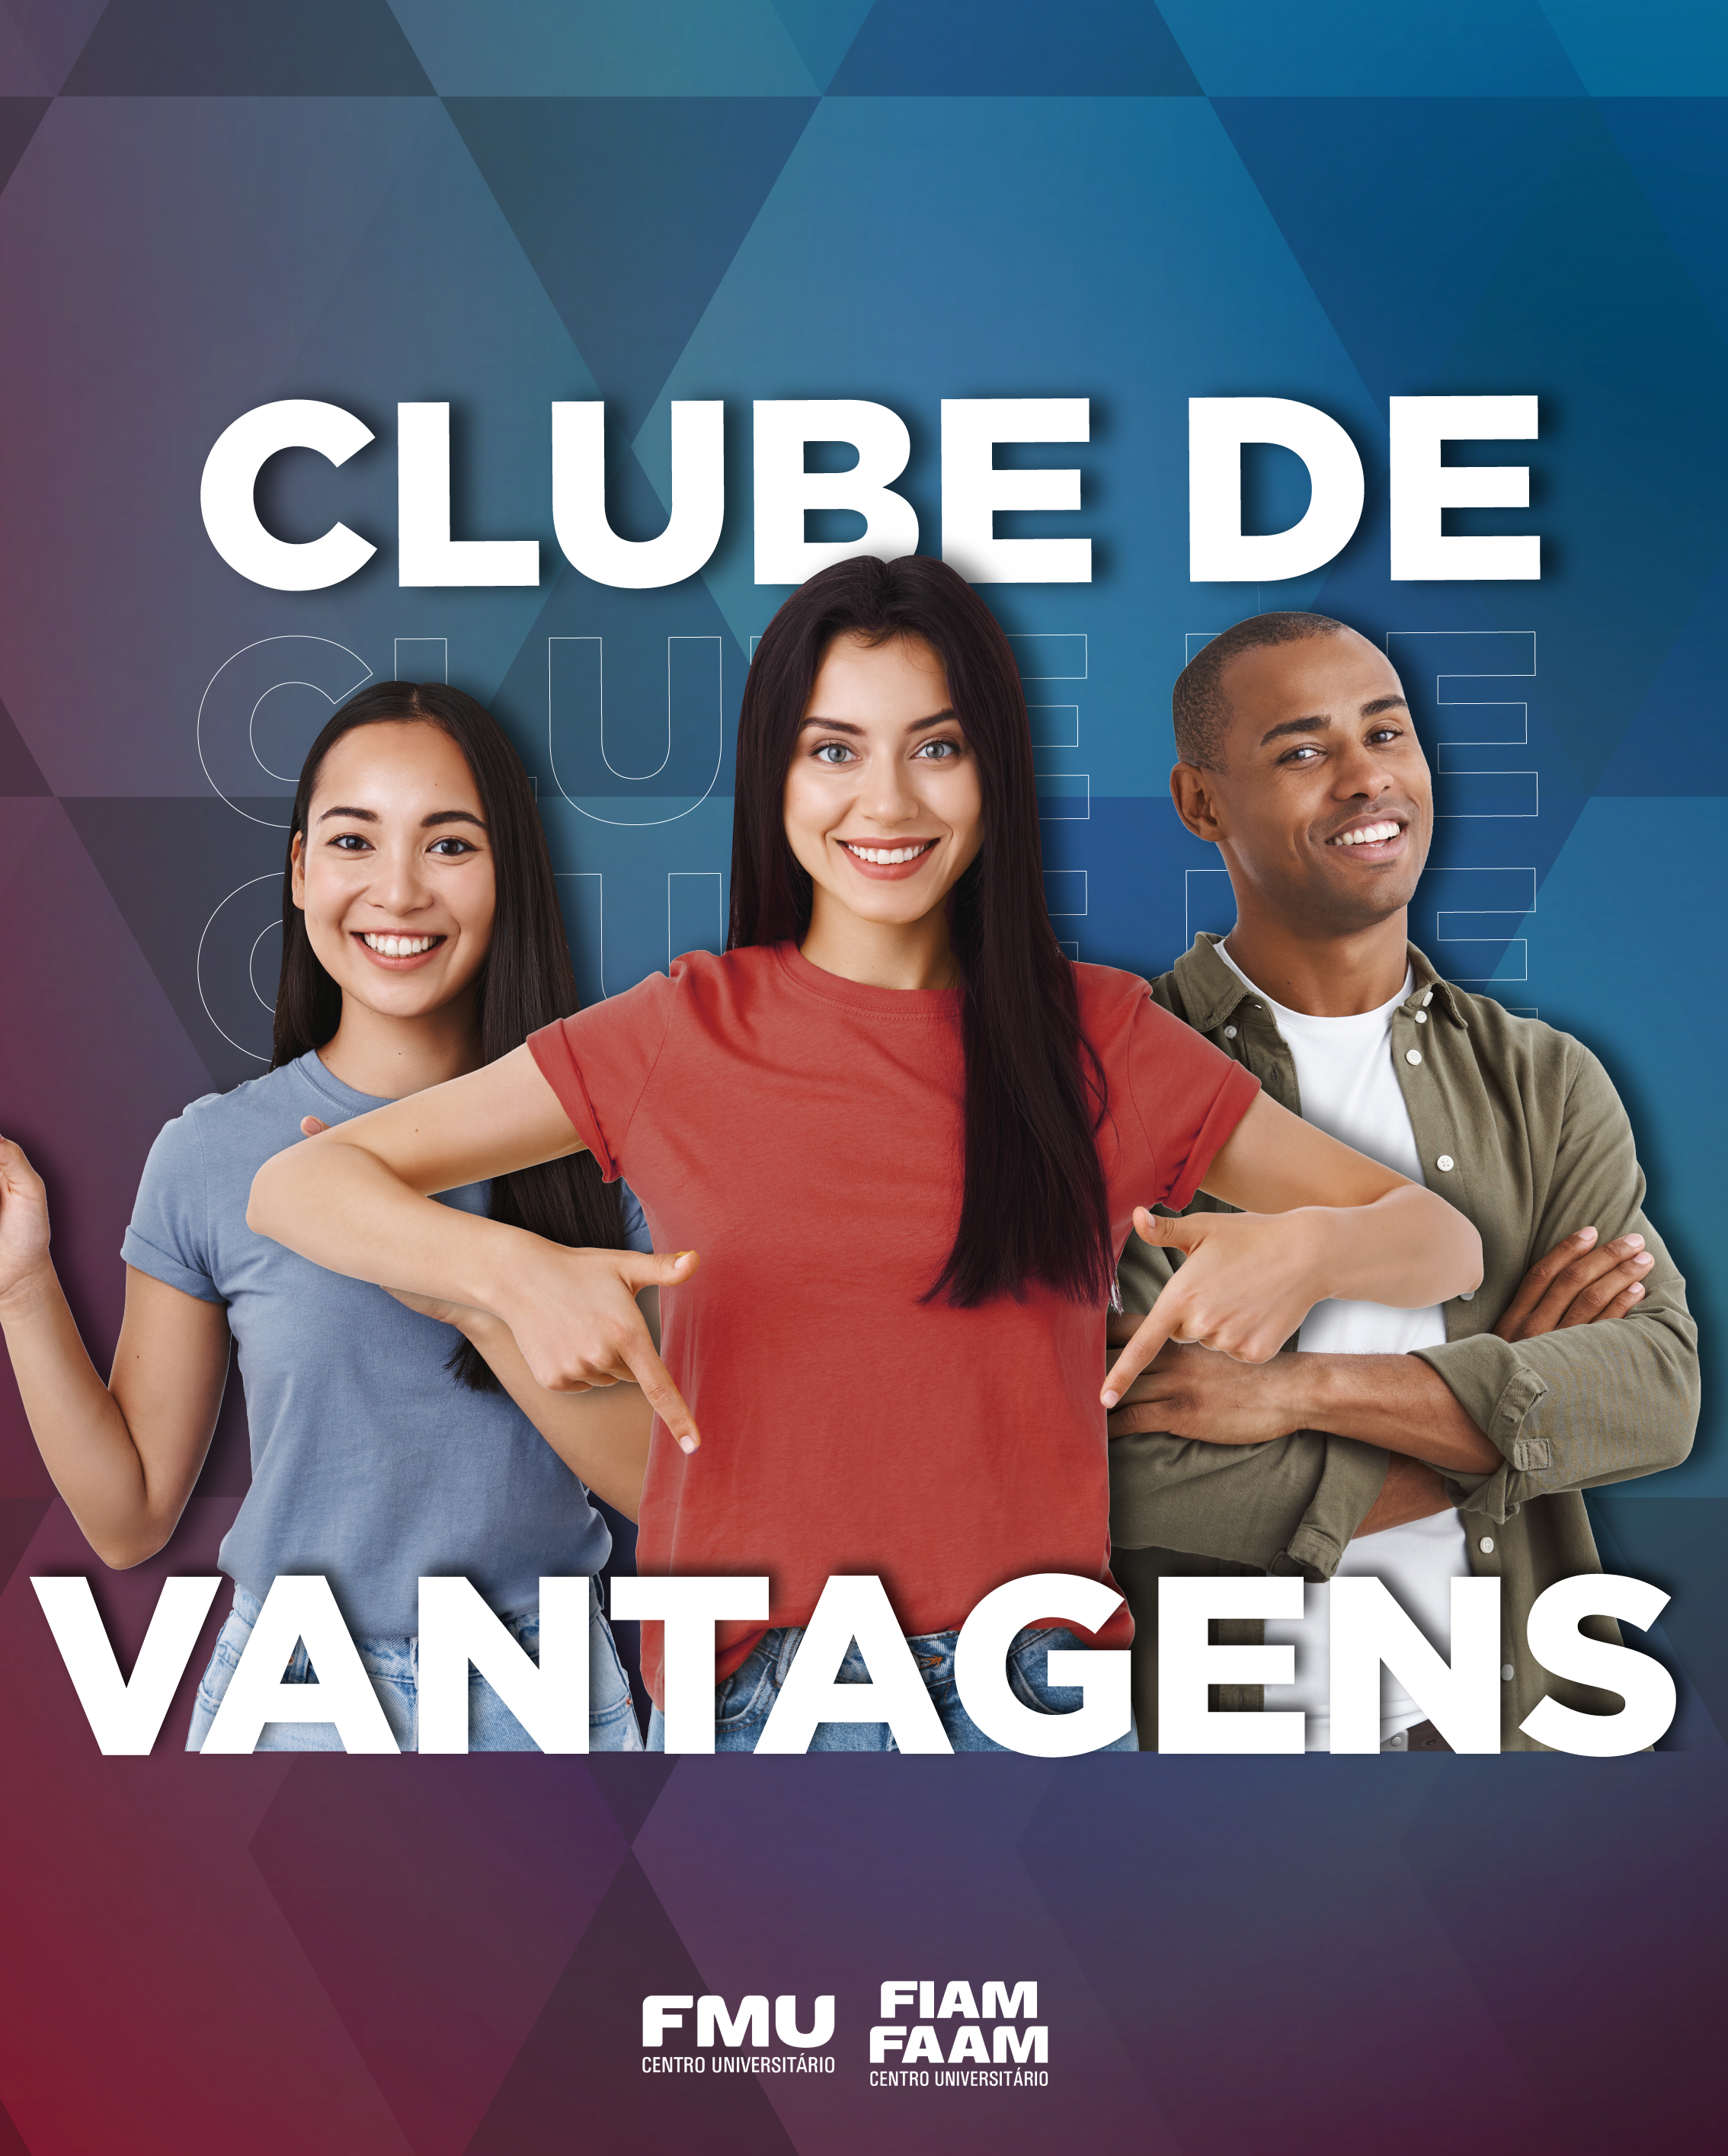 Clube de Vantagens – Informa FMU